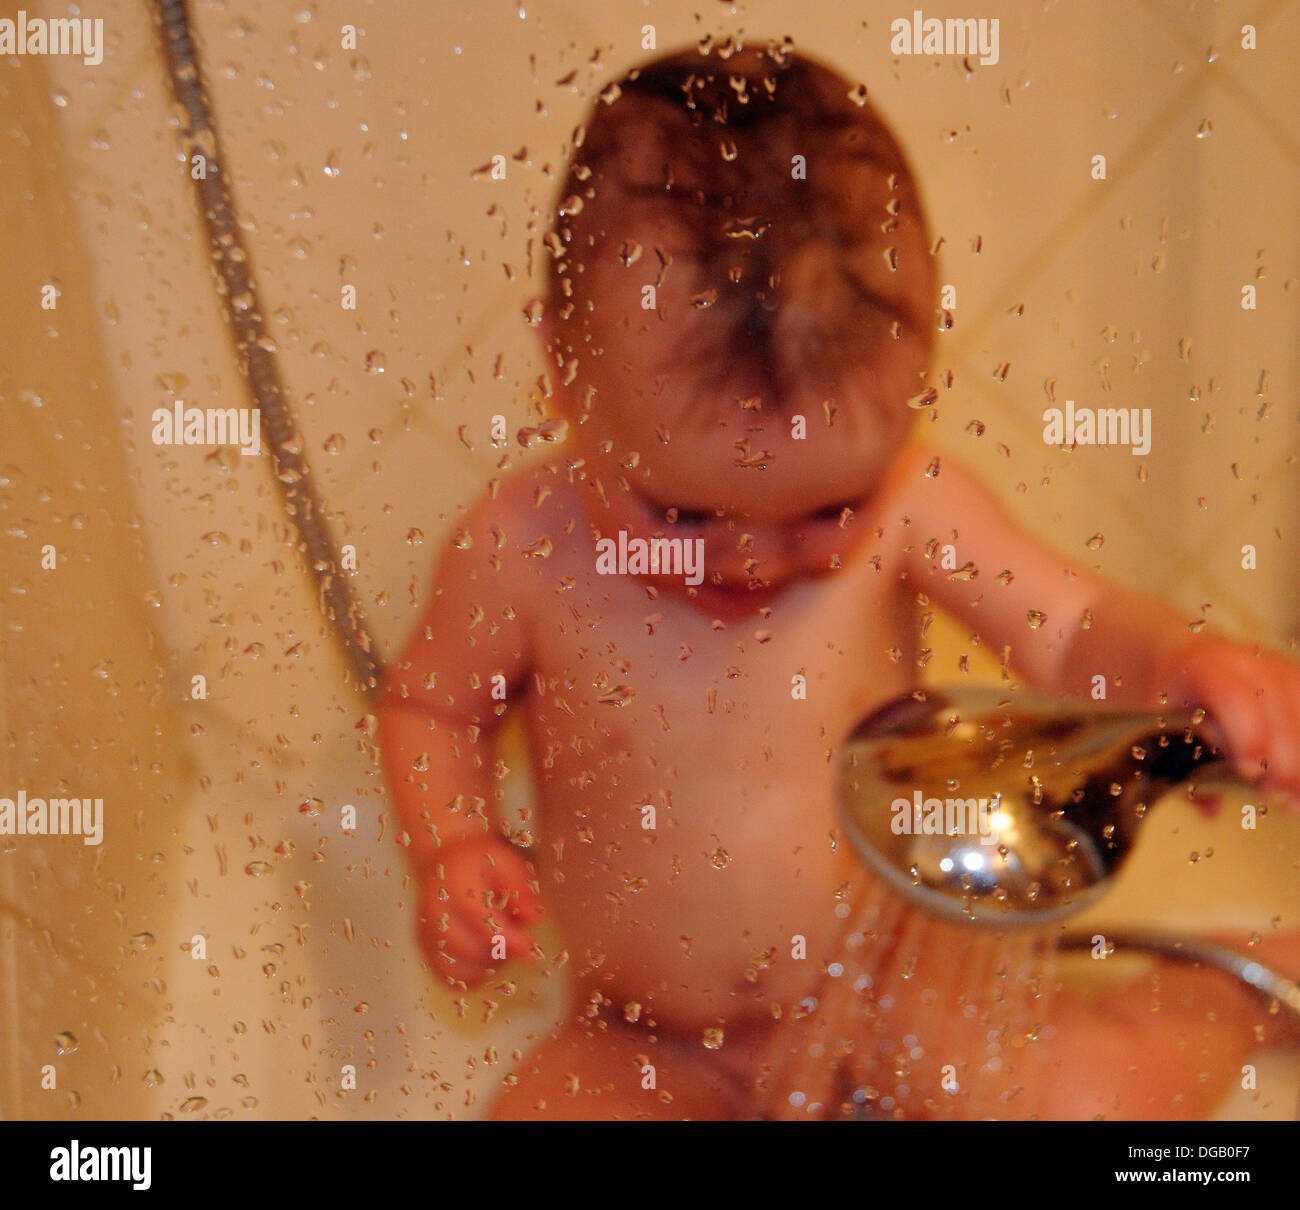 Un petit garçon dans une douche Banque D'Images